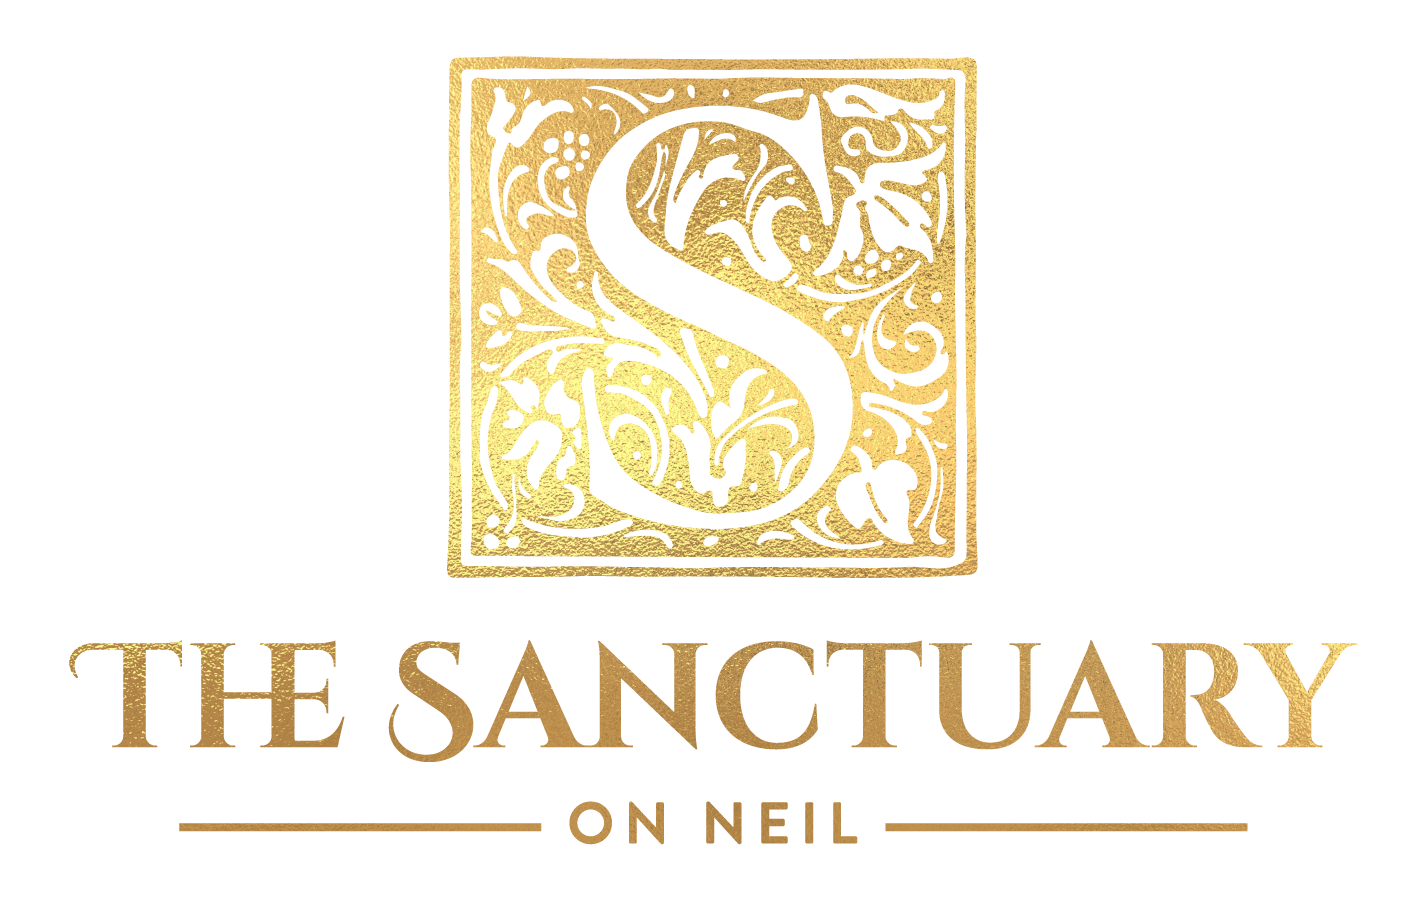 The Sanctuary on Neil